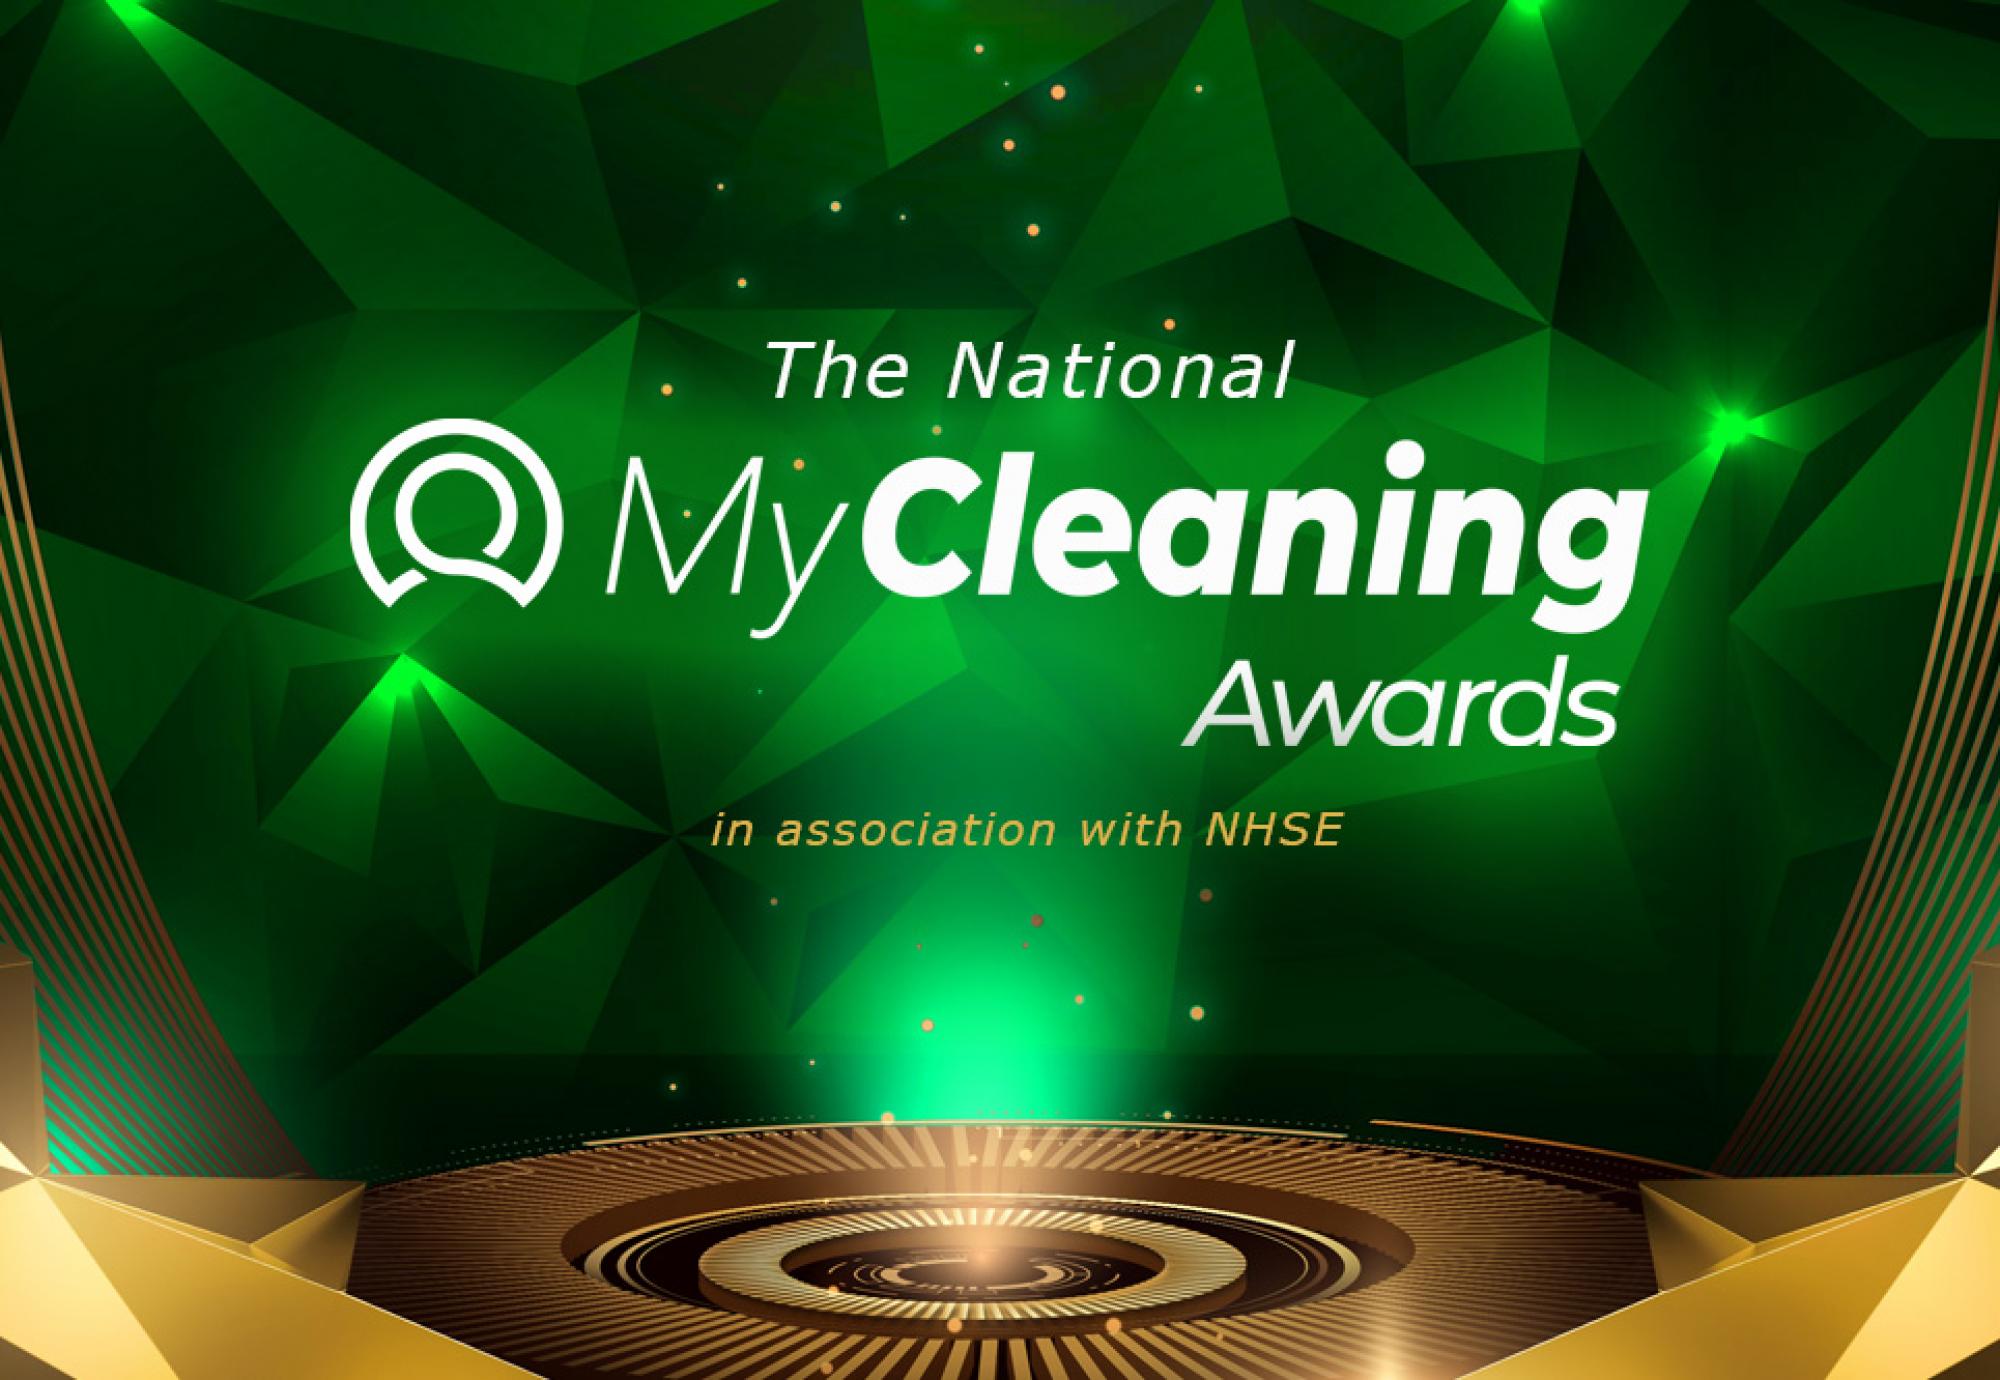 MyCleaning Awards